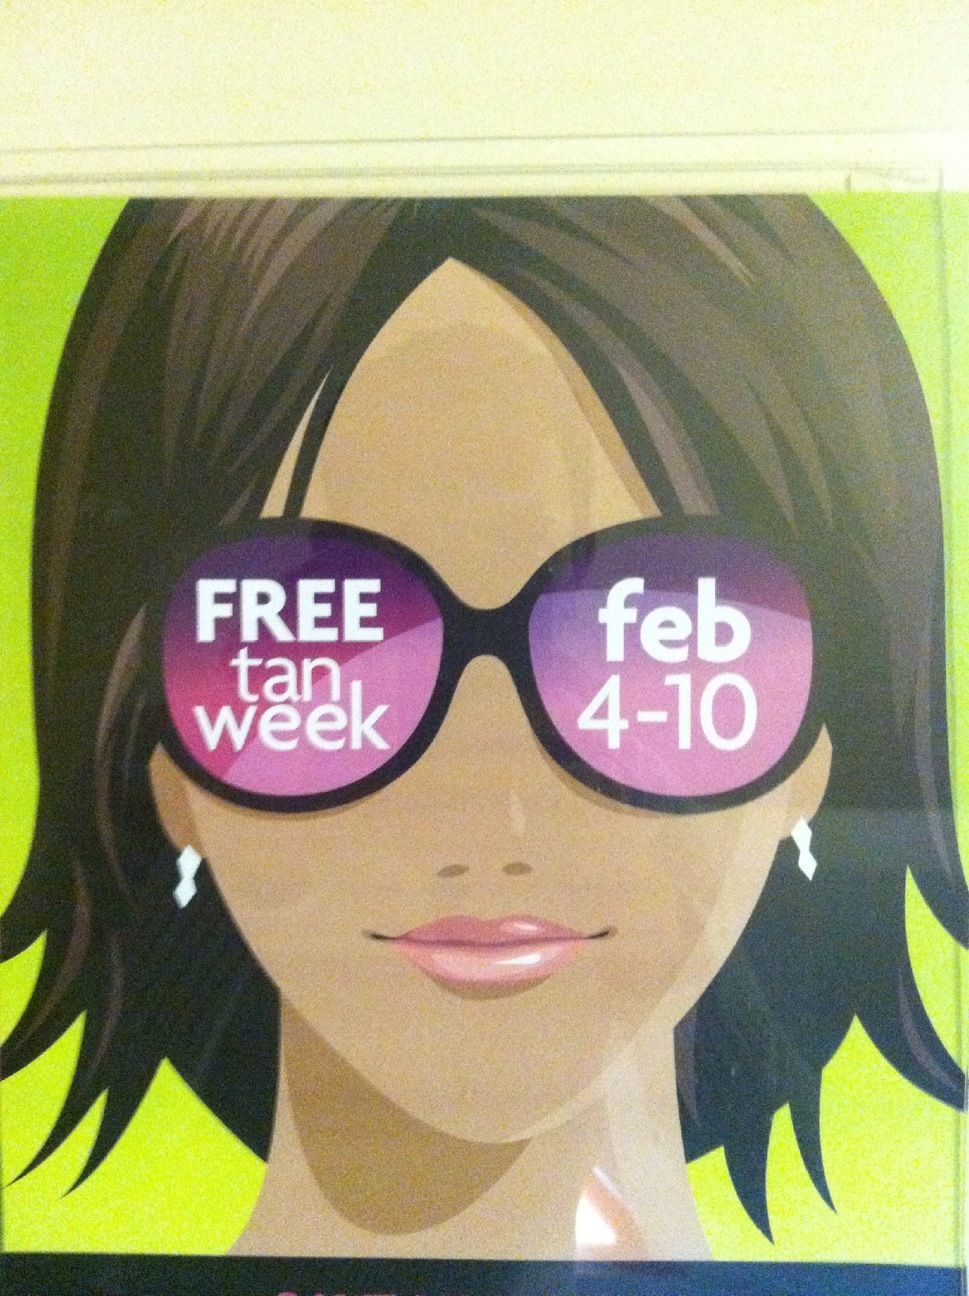 I love Free Tan Week!